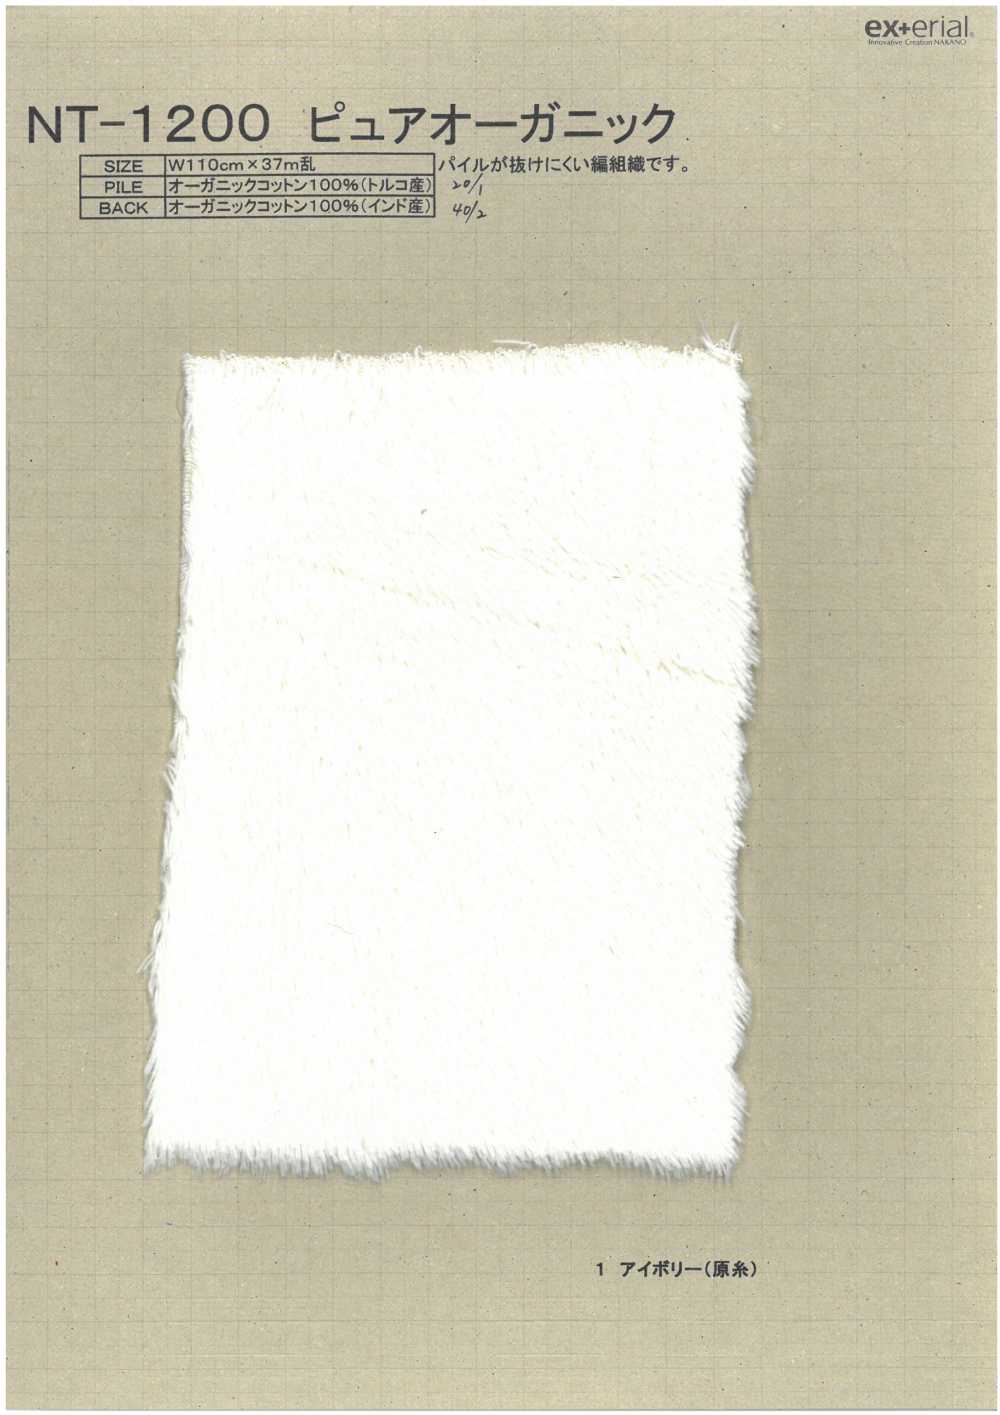 NT-1200 Fourrure Artisanale [Boa En Coton Biologique][Fabrication De Textile] Industrie Du Jersey Nakano